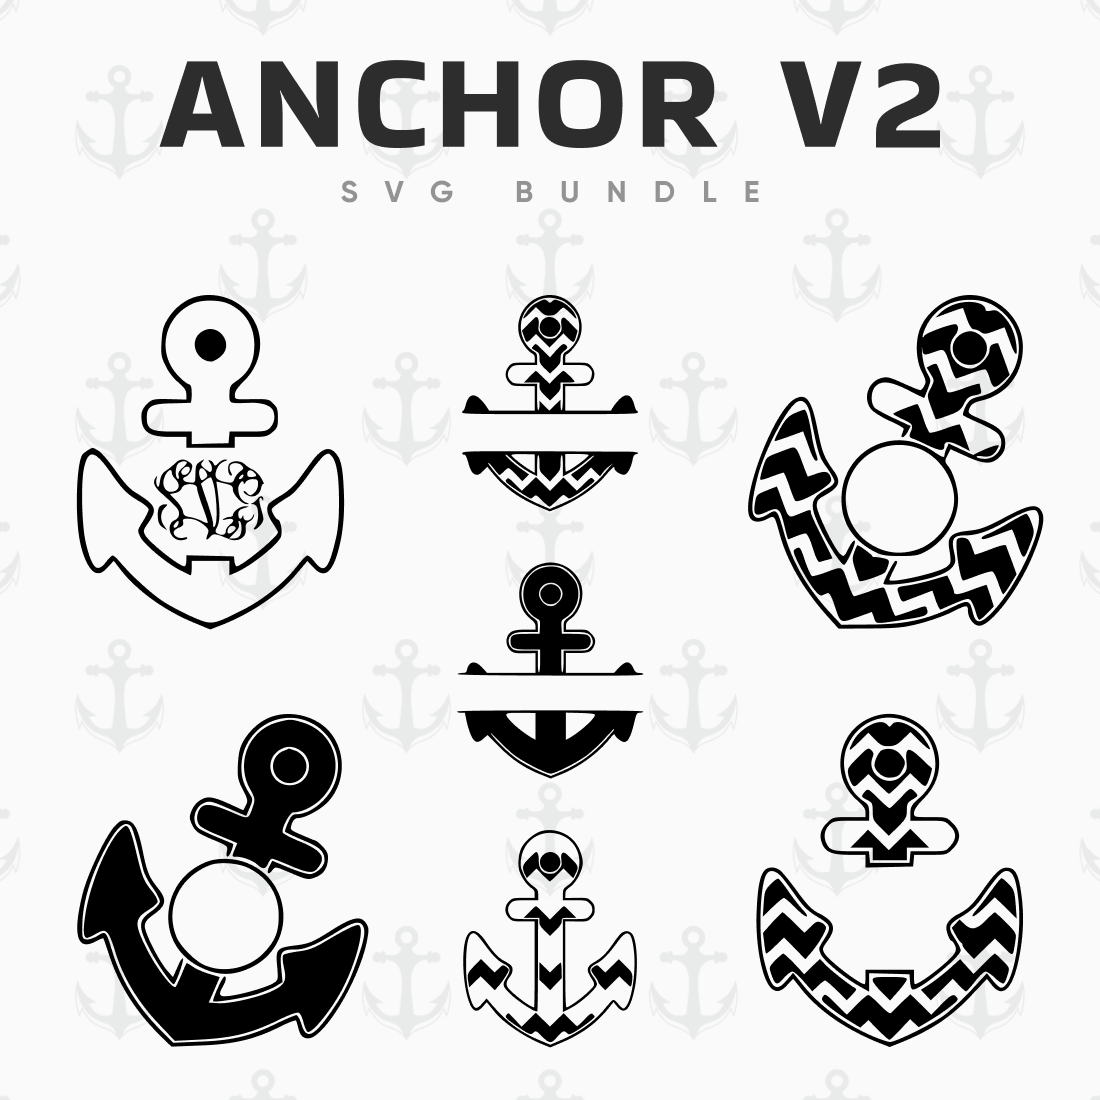 Anchor V2 SVG Bundle.